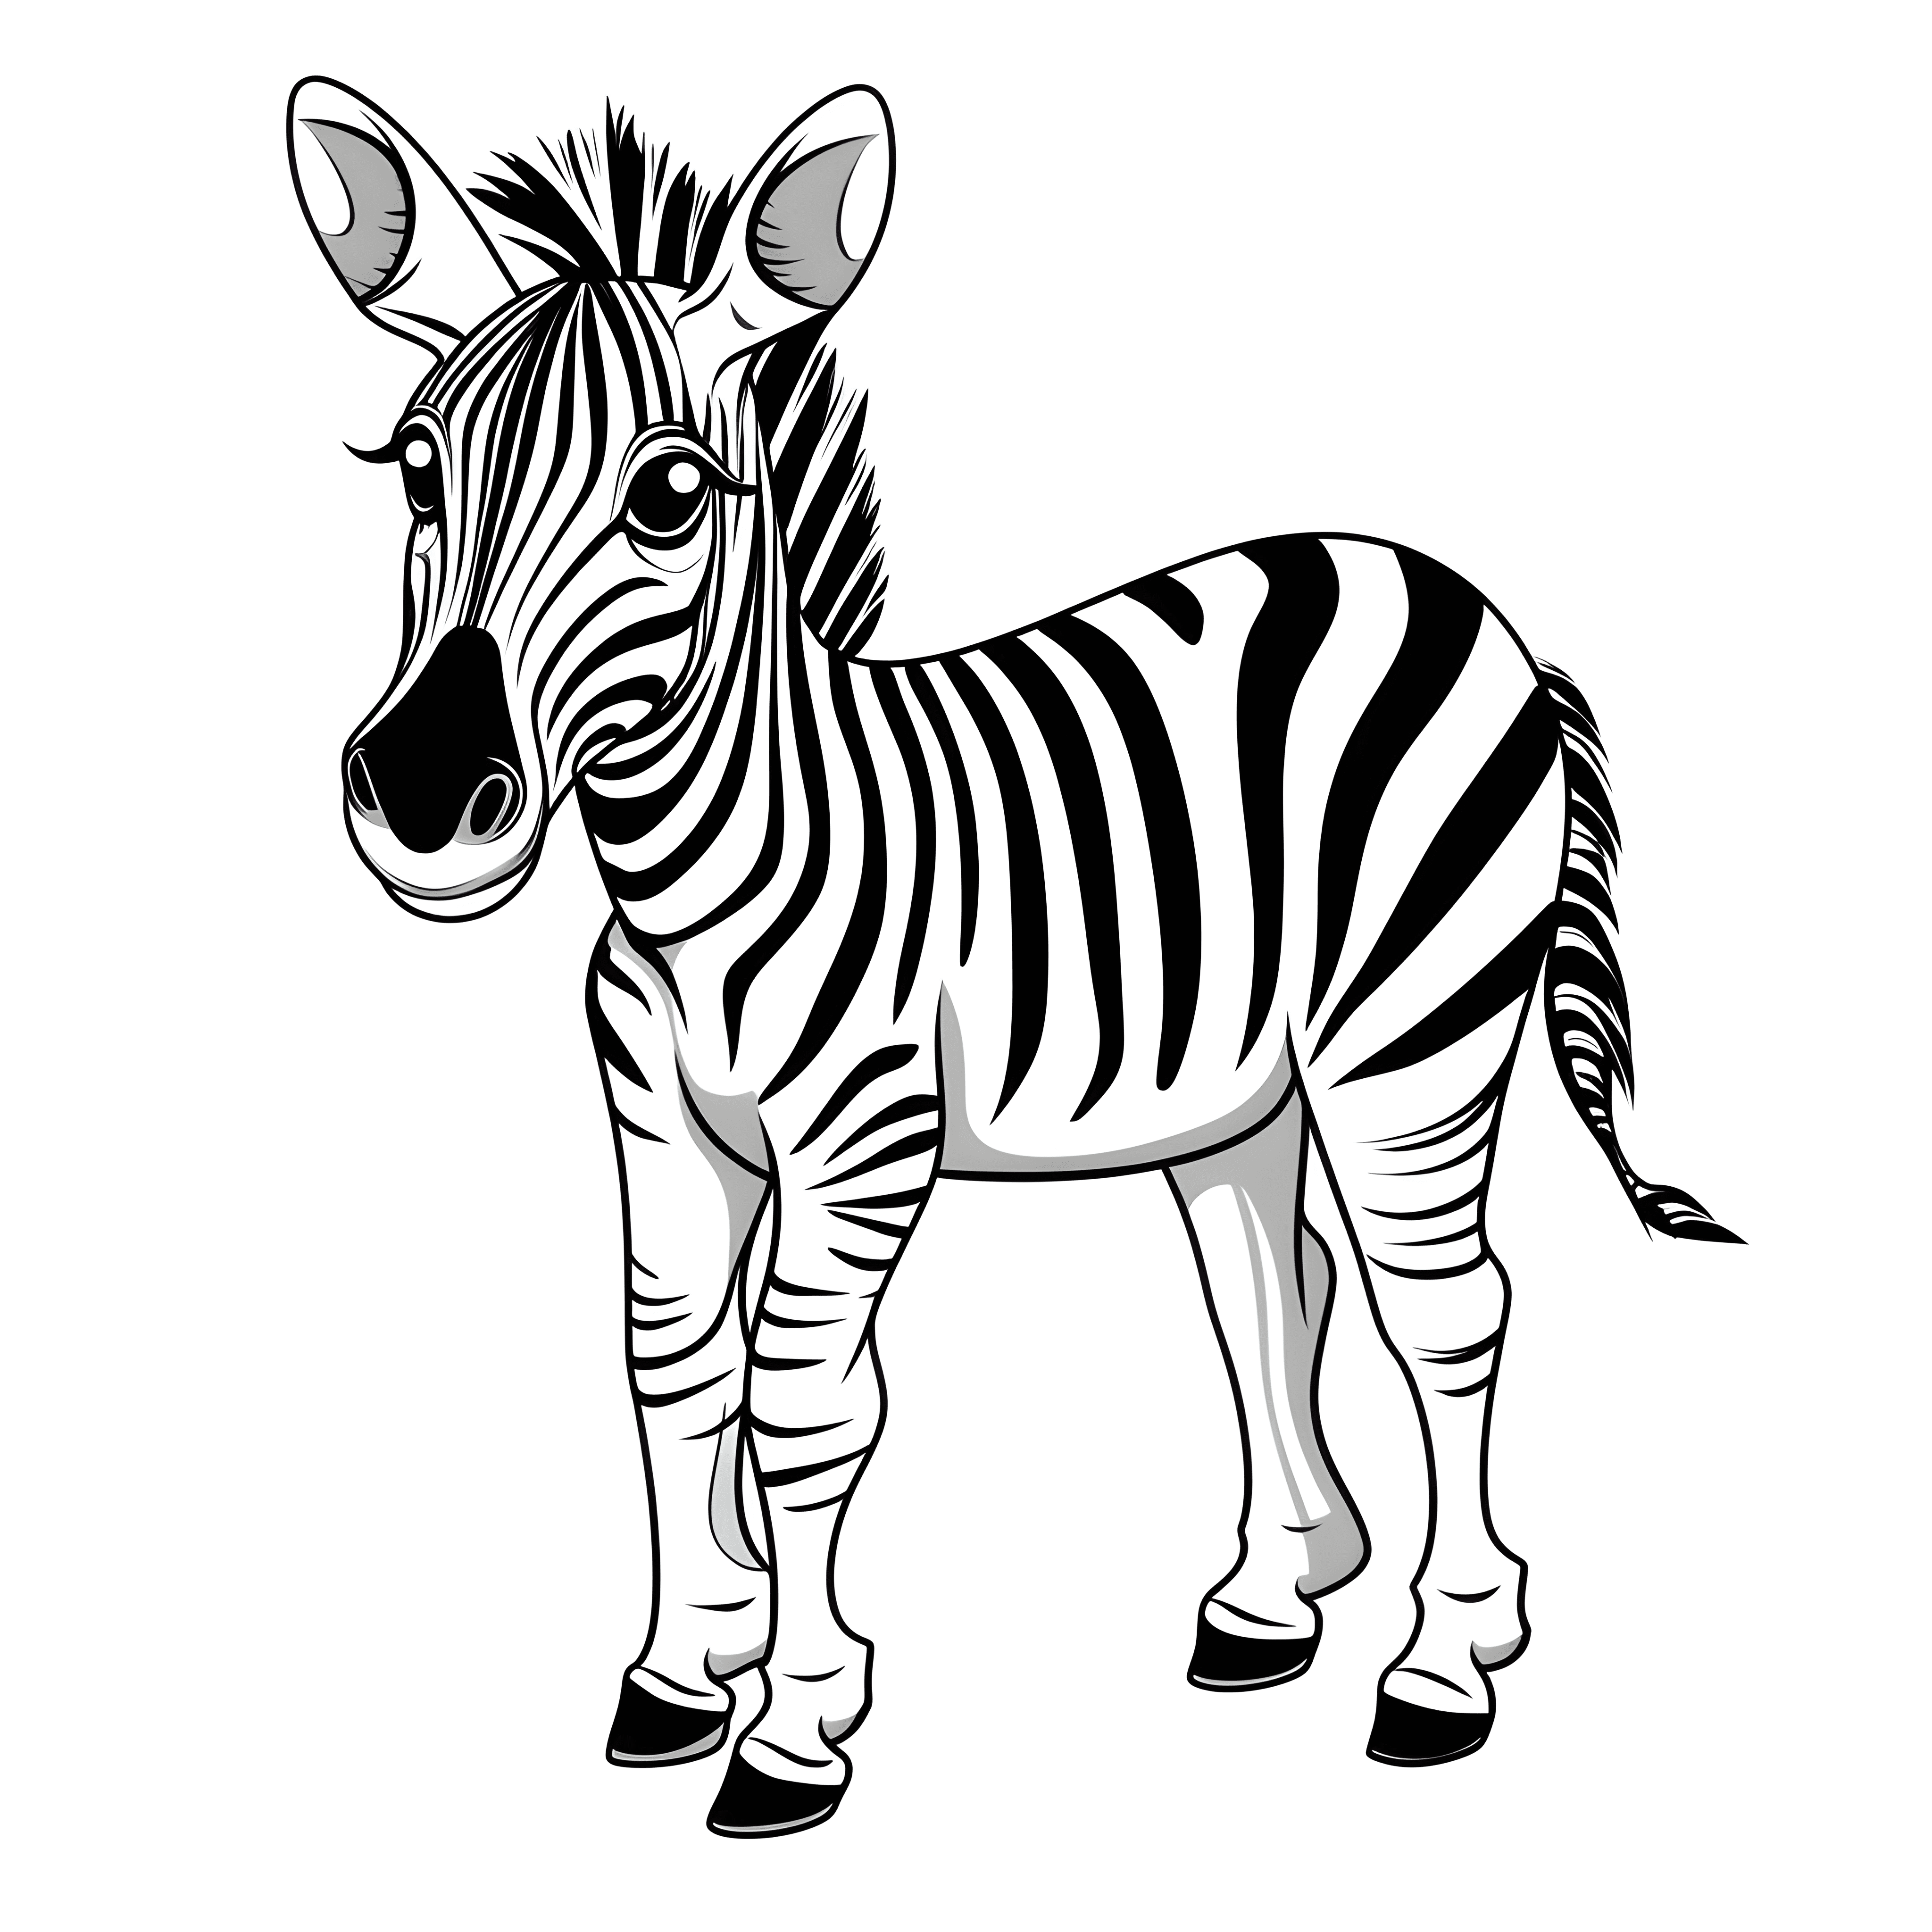 Ein sehr einfaches Cartoon-Zebra in einem Malbuch für Kinder